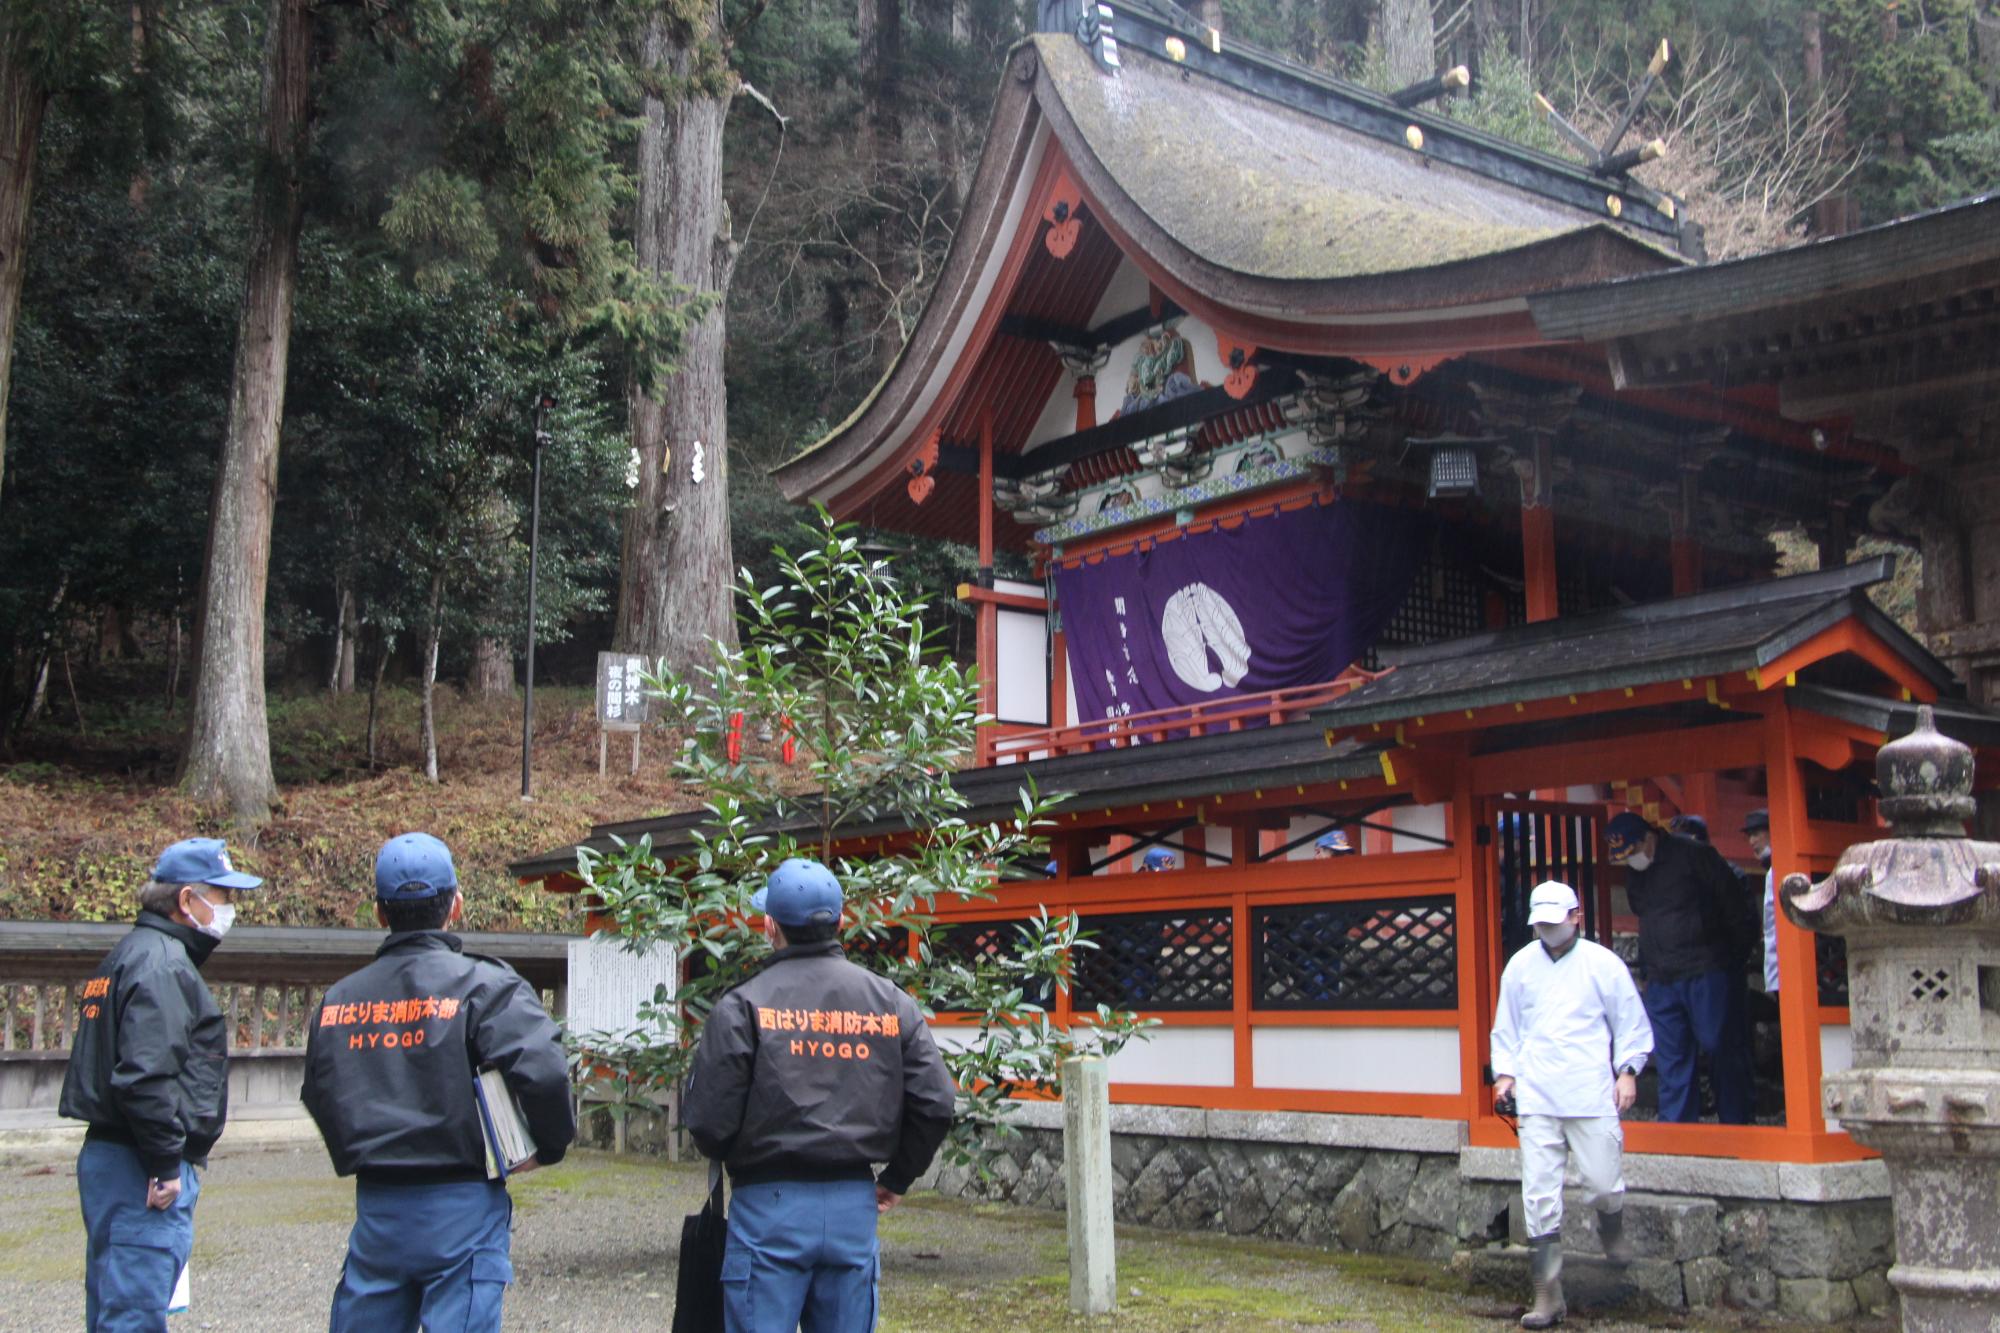 御形神社の本殿を査察する消防署職員の写真